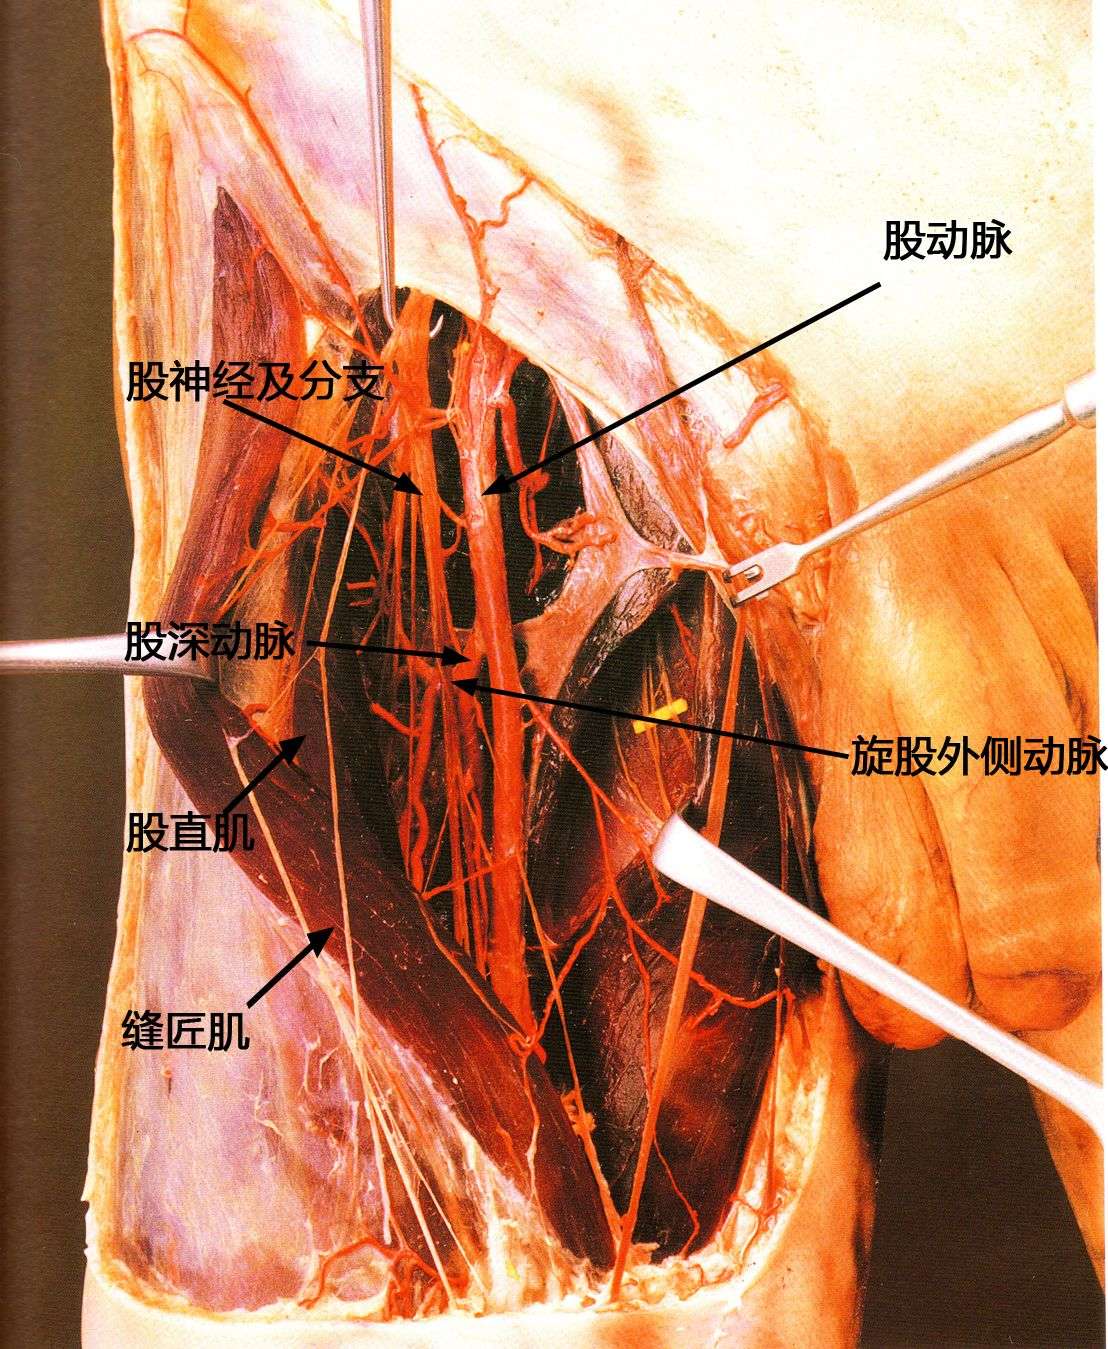 图1,解剖标本